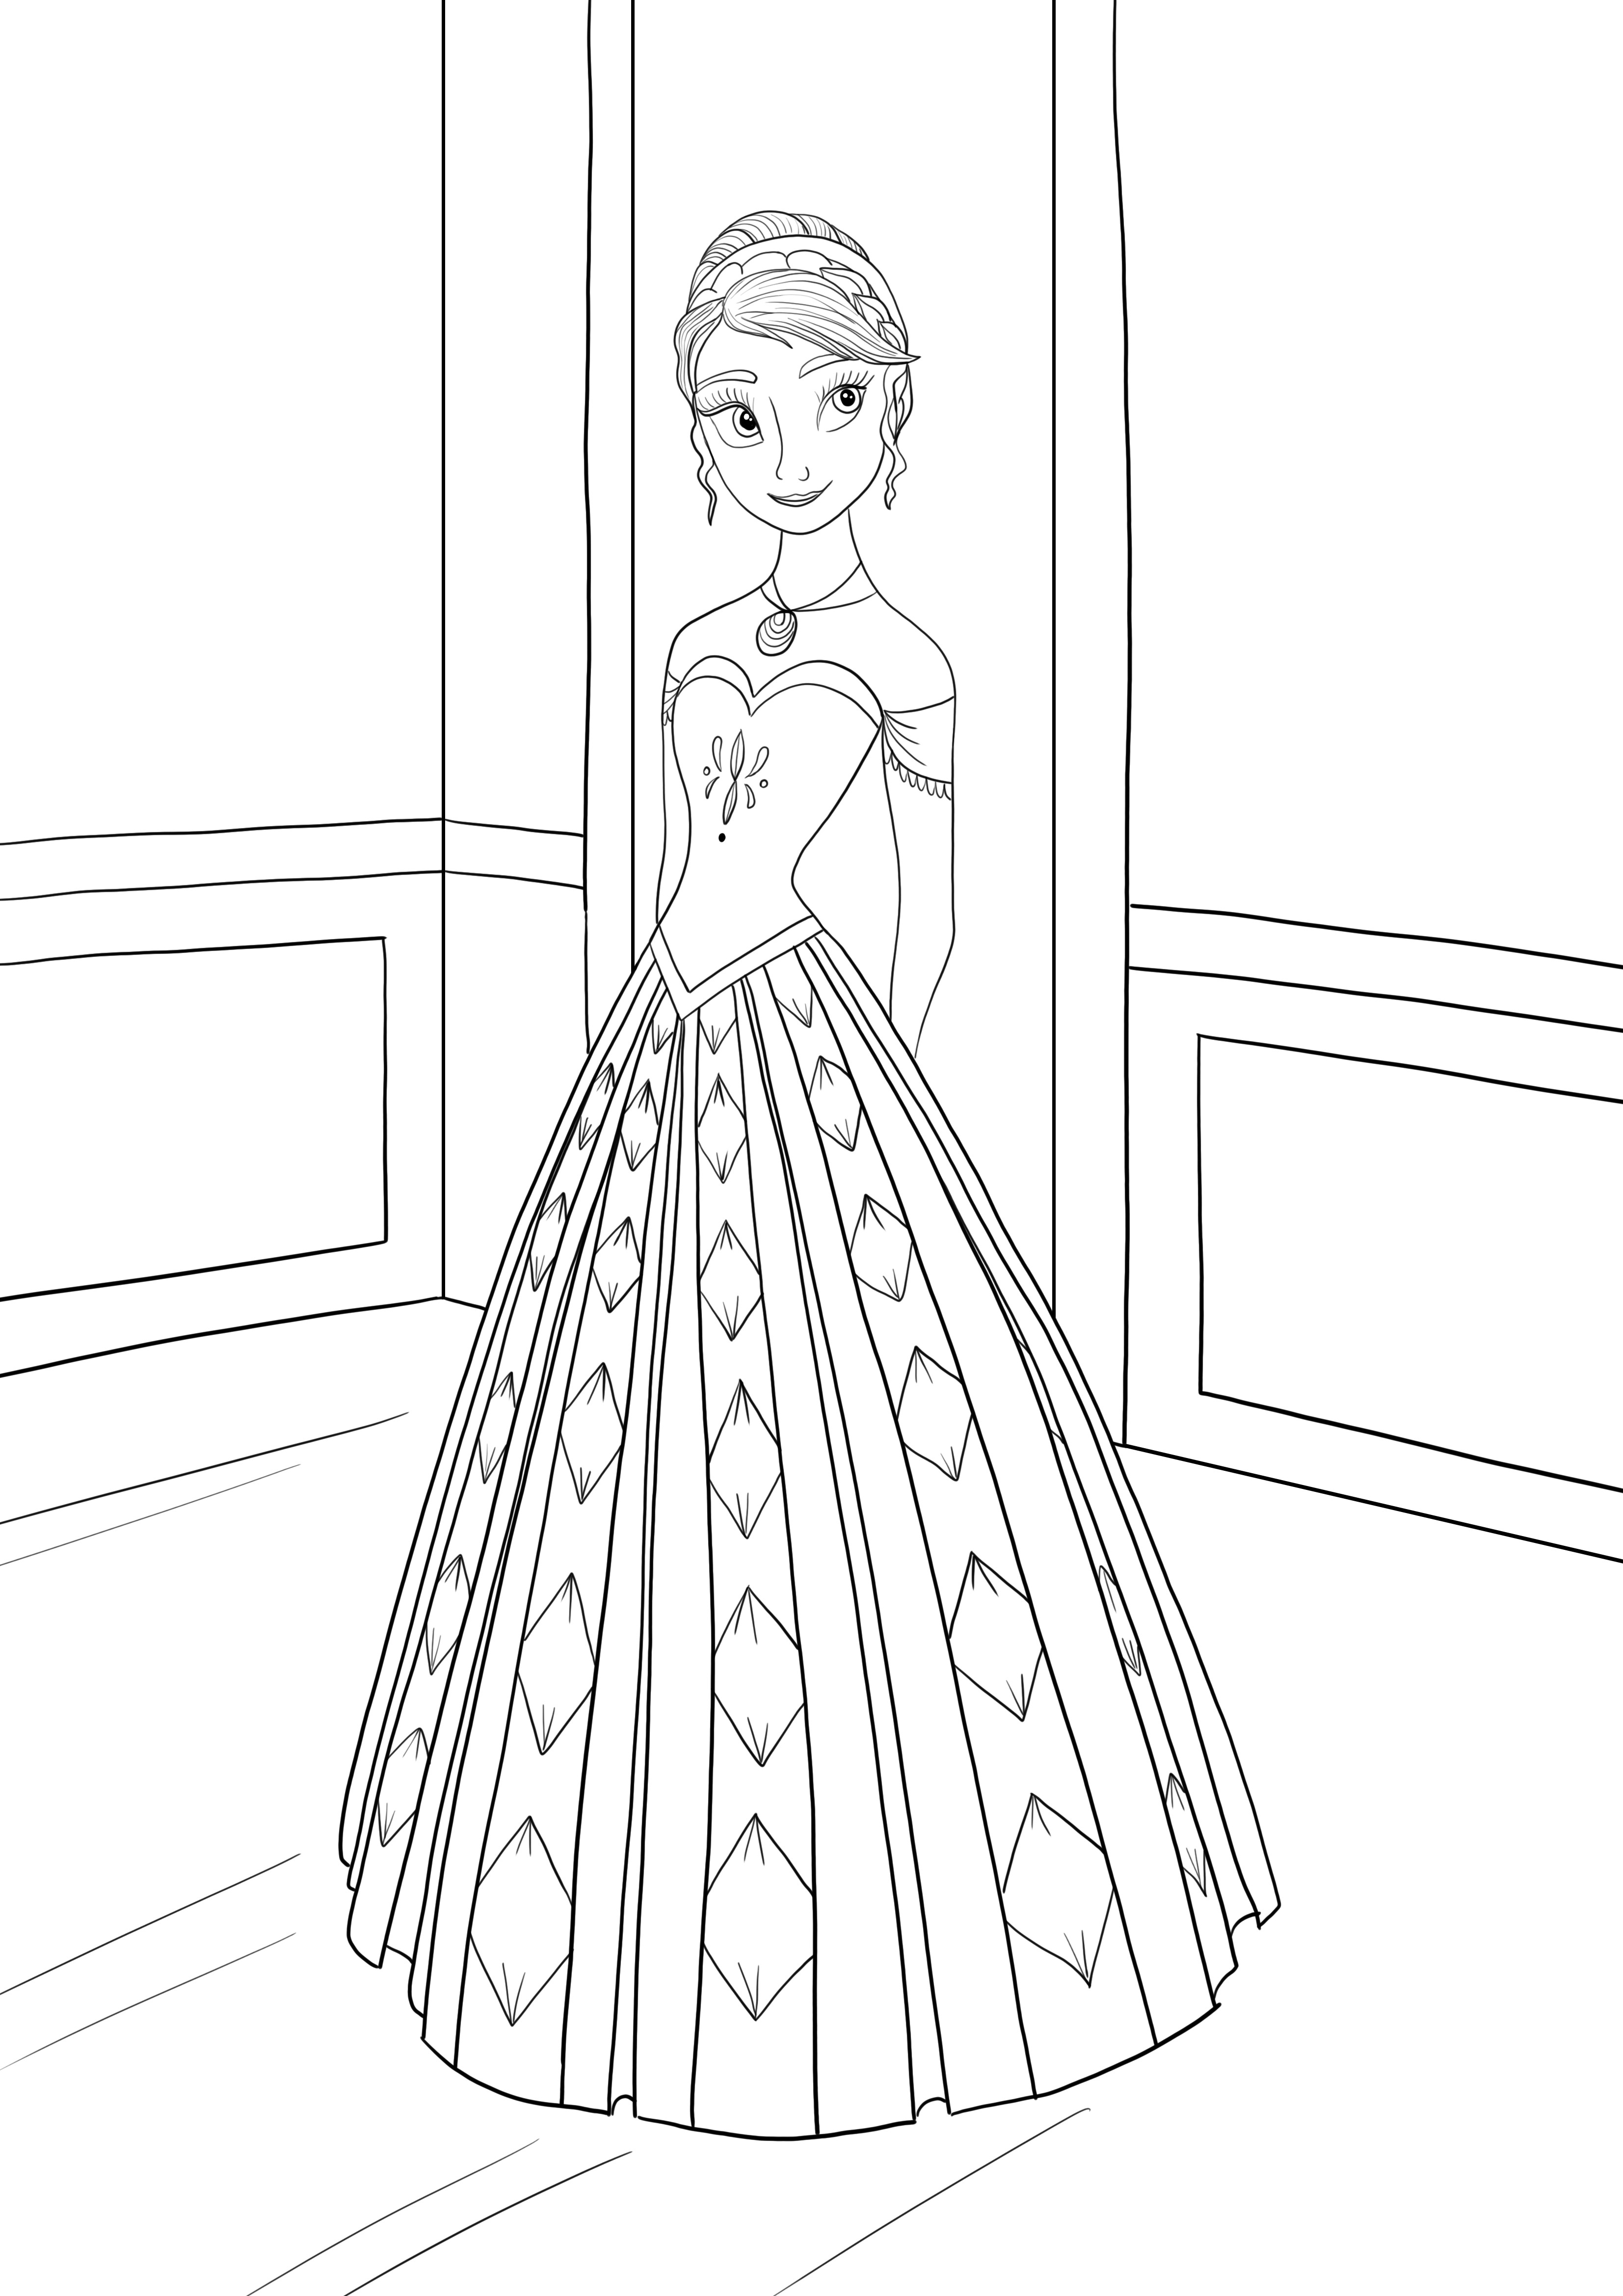 Princesa Anna do desenho animado Frozen impressão e coloração grátis